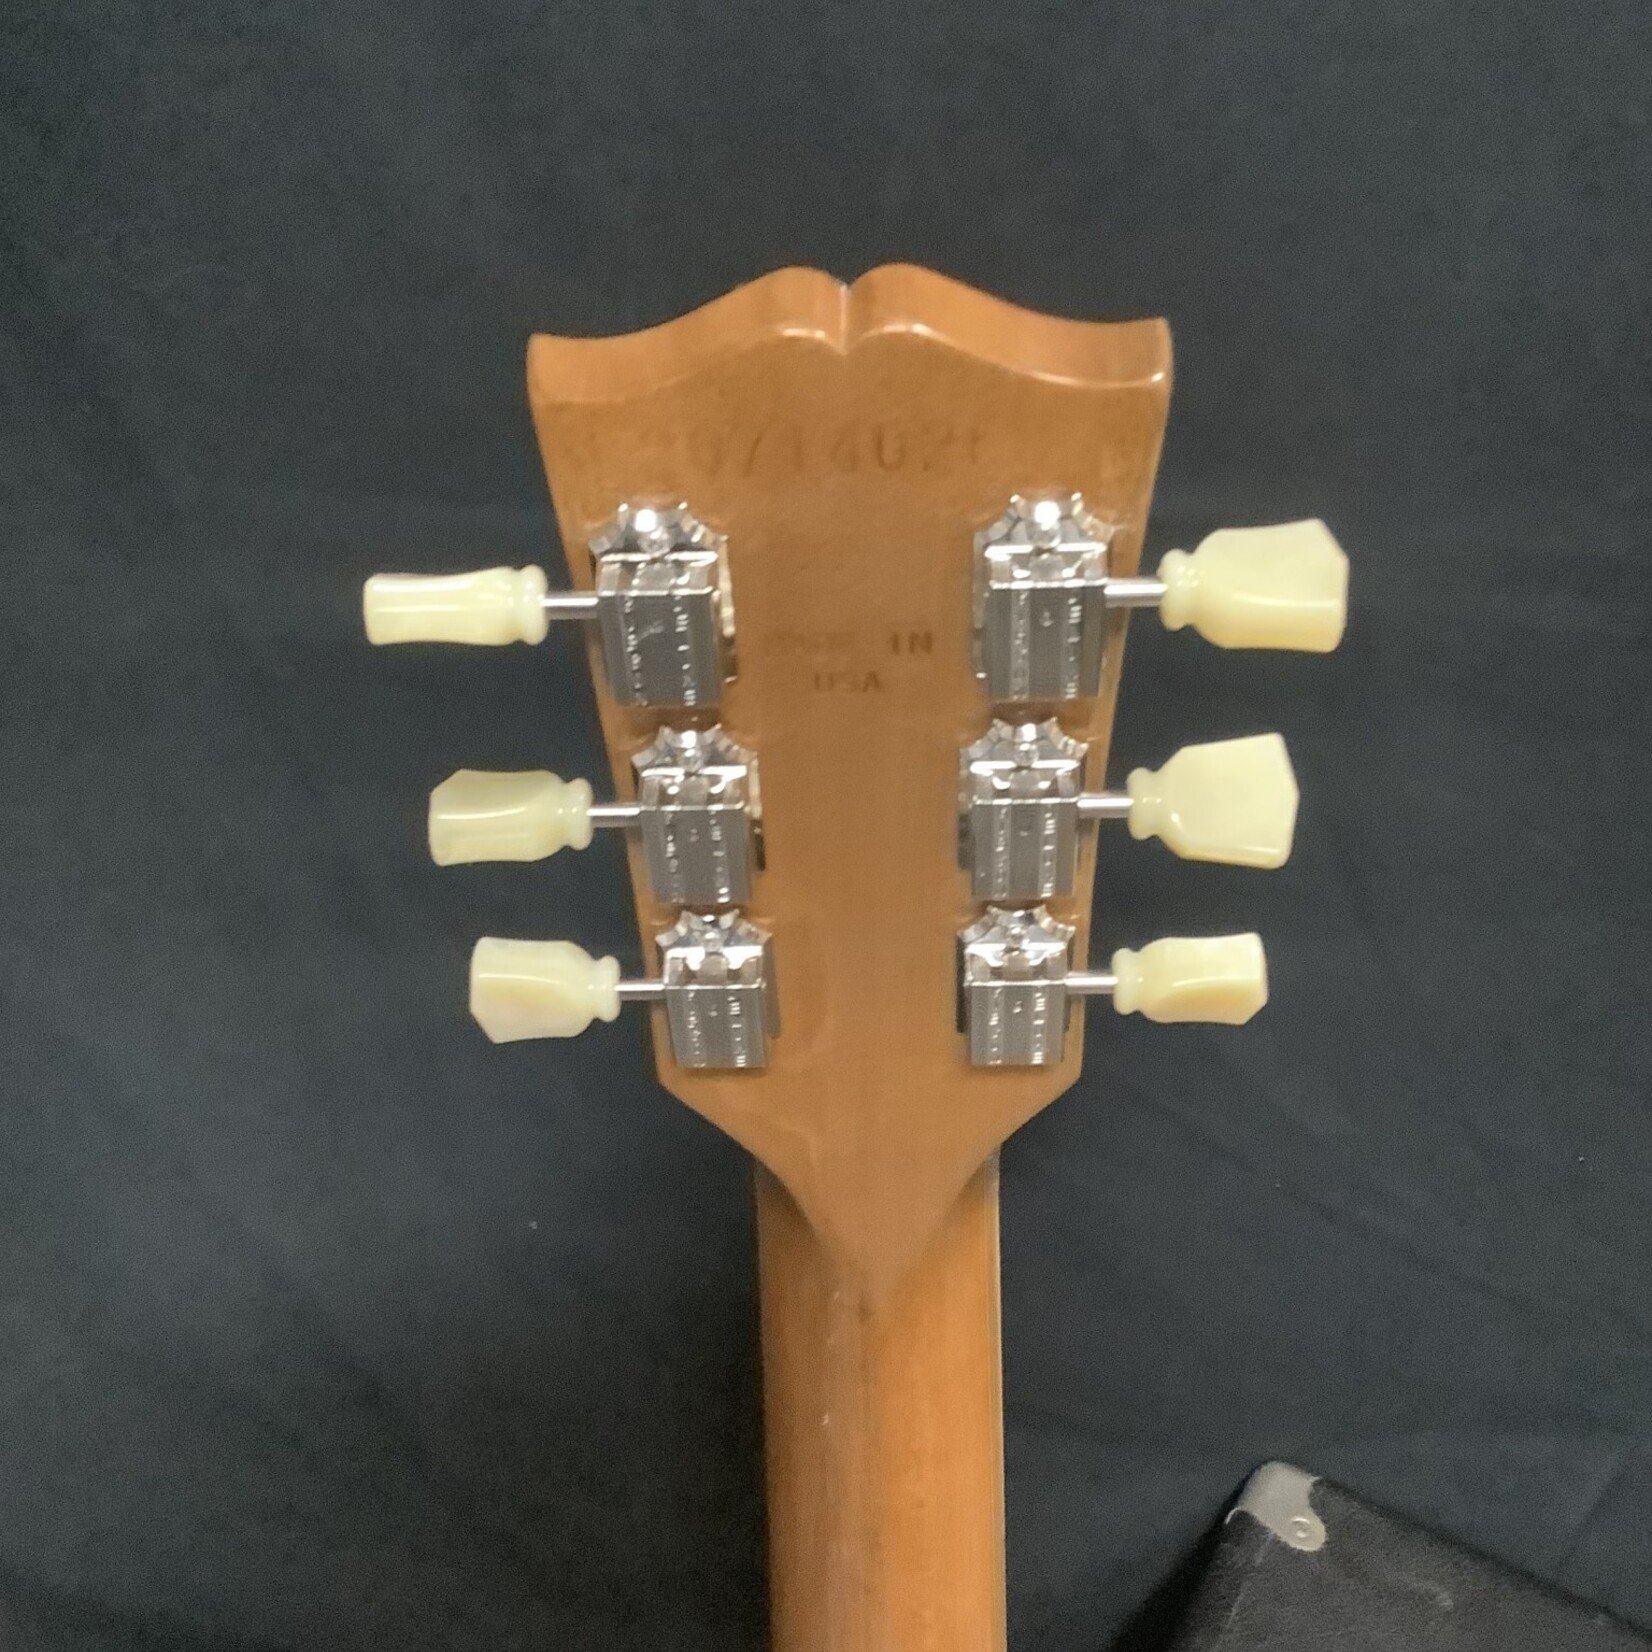 Gibson 2024 Gibson ES-335 Natural